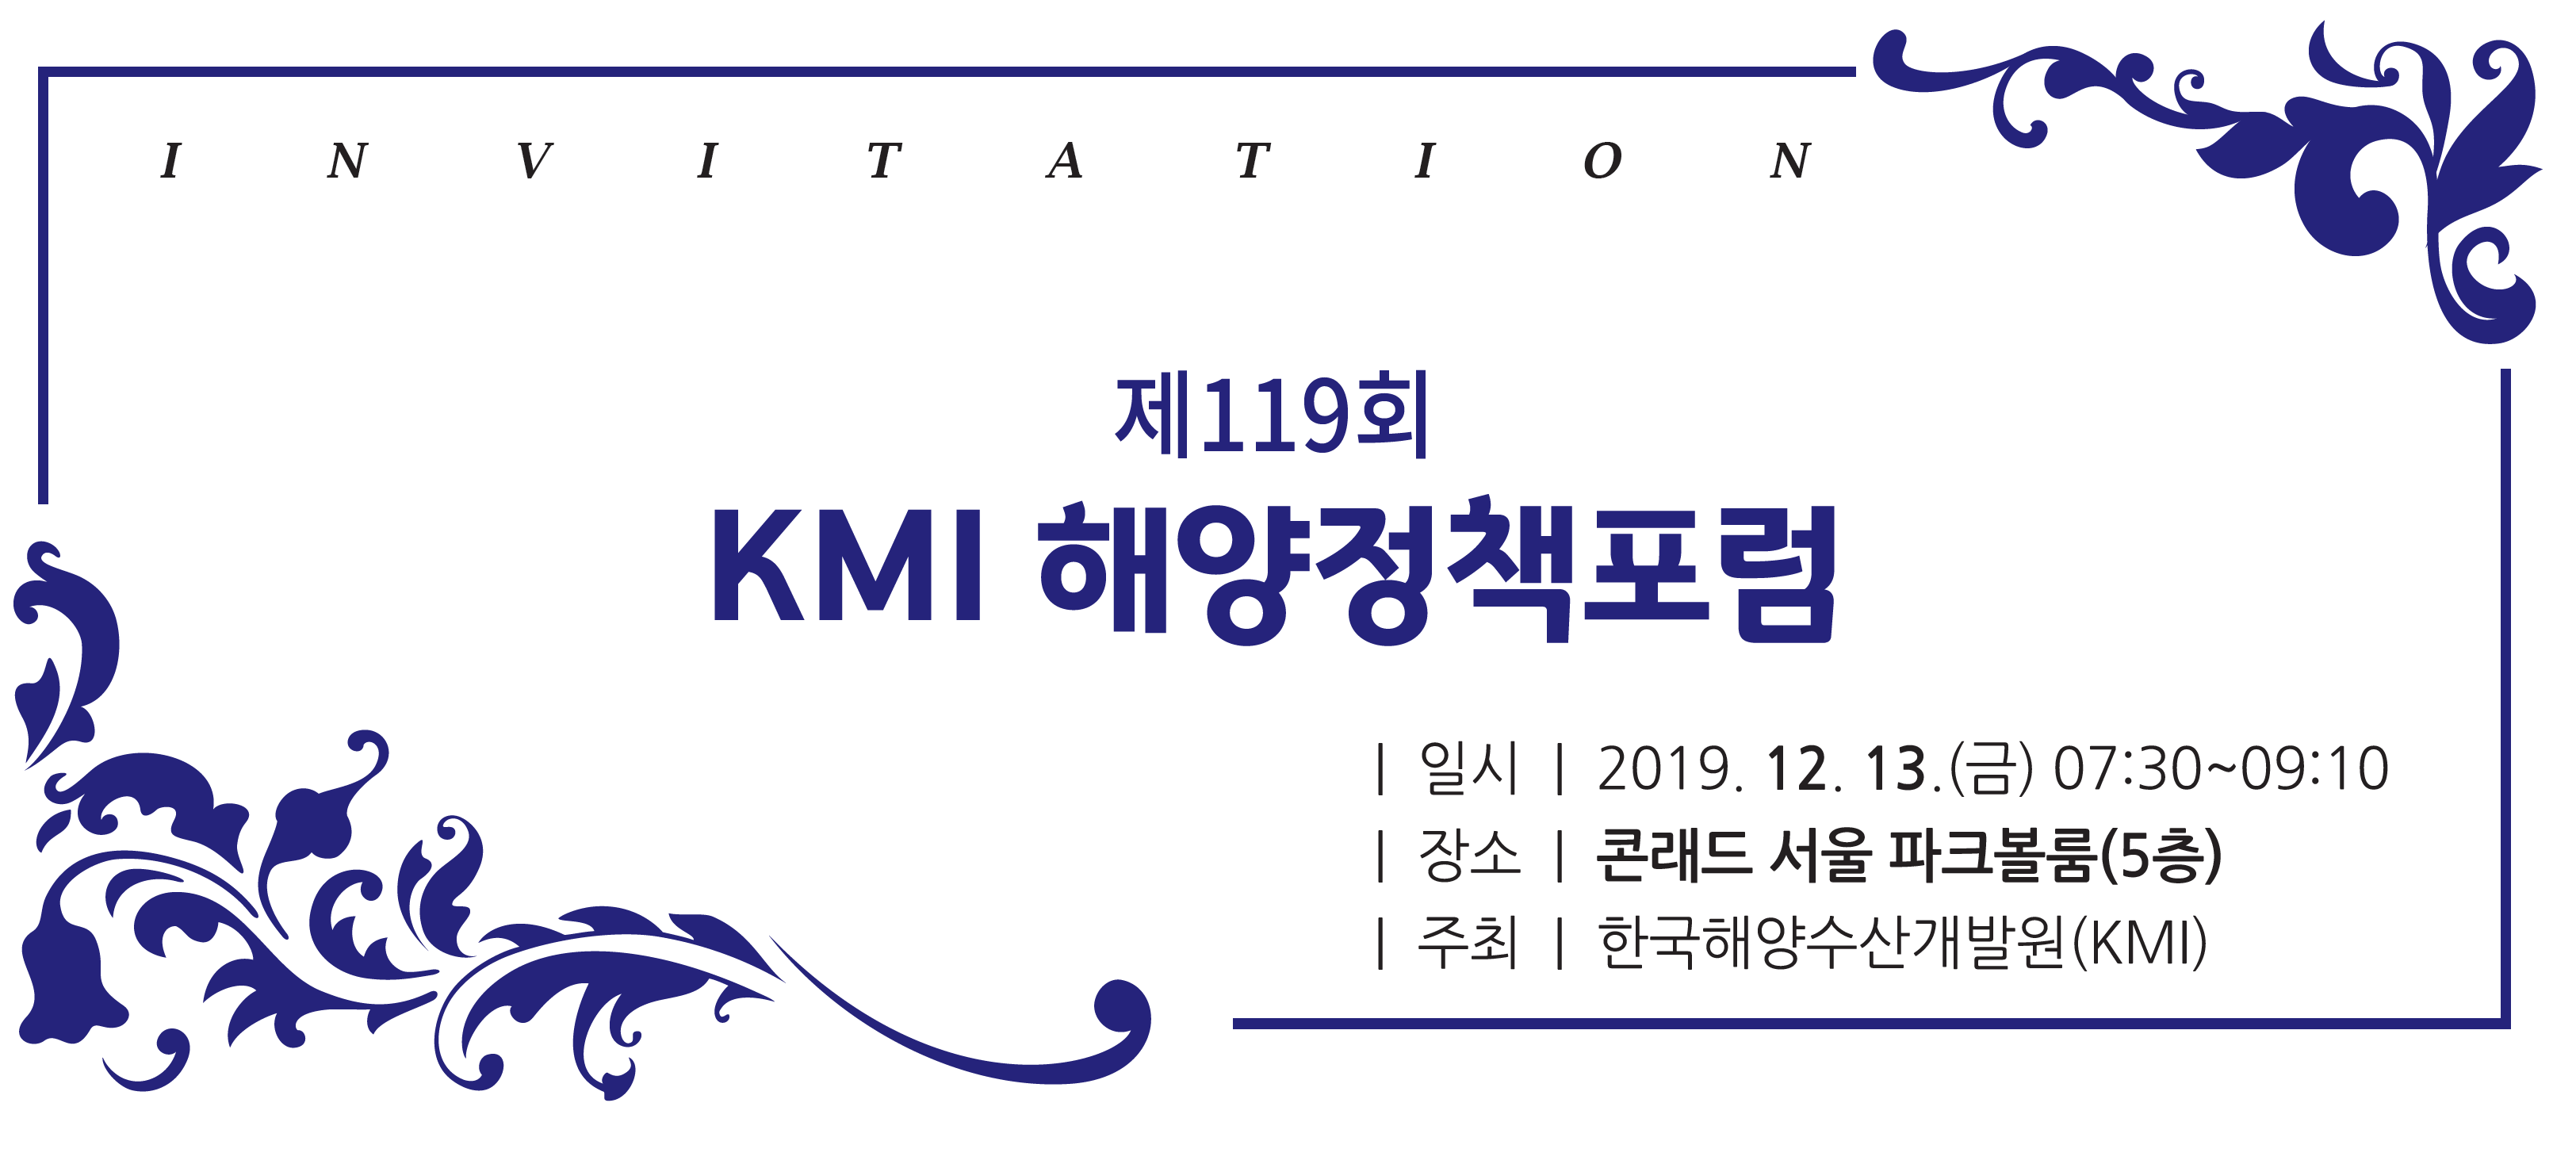 제 119회 KMI 해양정책포럼 | 일시 | 2019.12.13(금) 07:30~09:10 | 장소 | 콘래드 서울 파크볼룸(5층) | 주최 | 한국해양수산개발원(KMI)